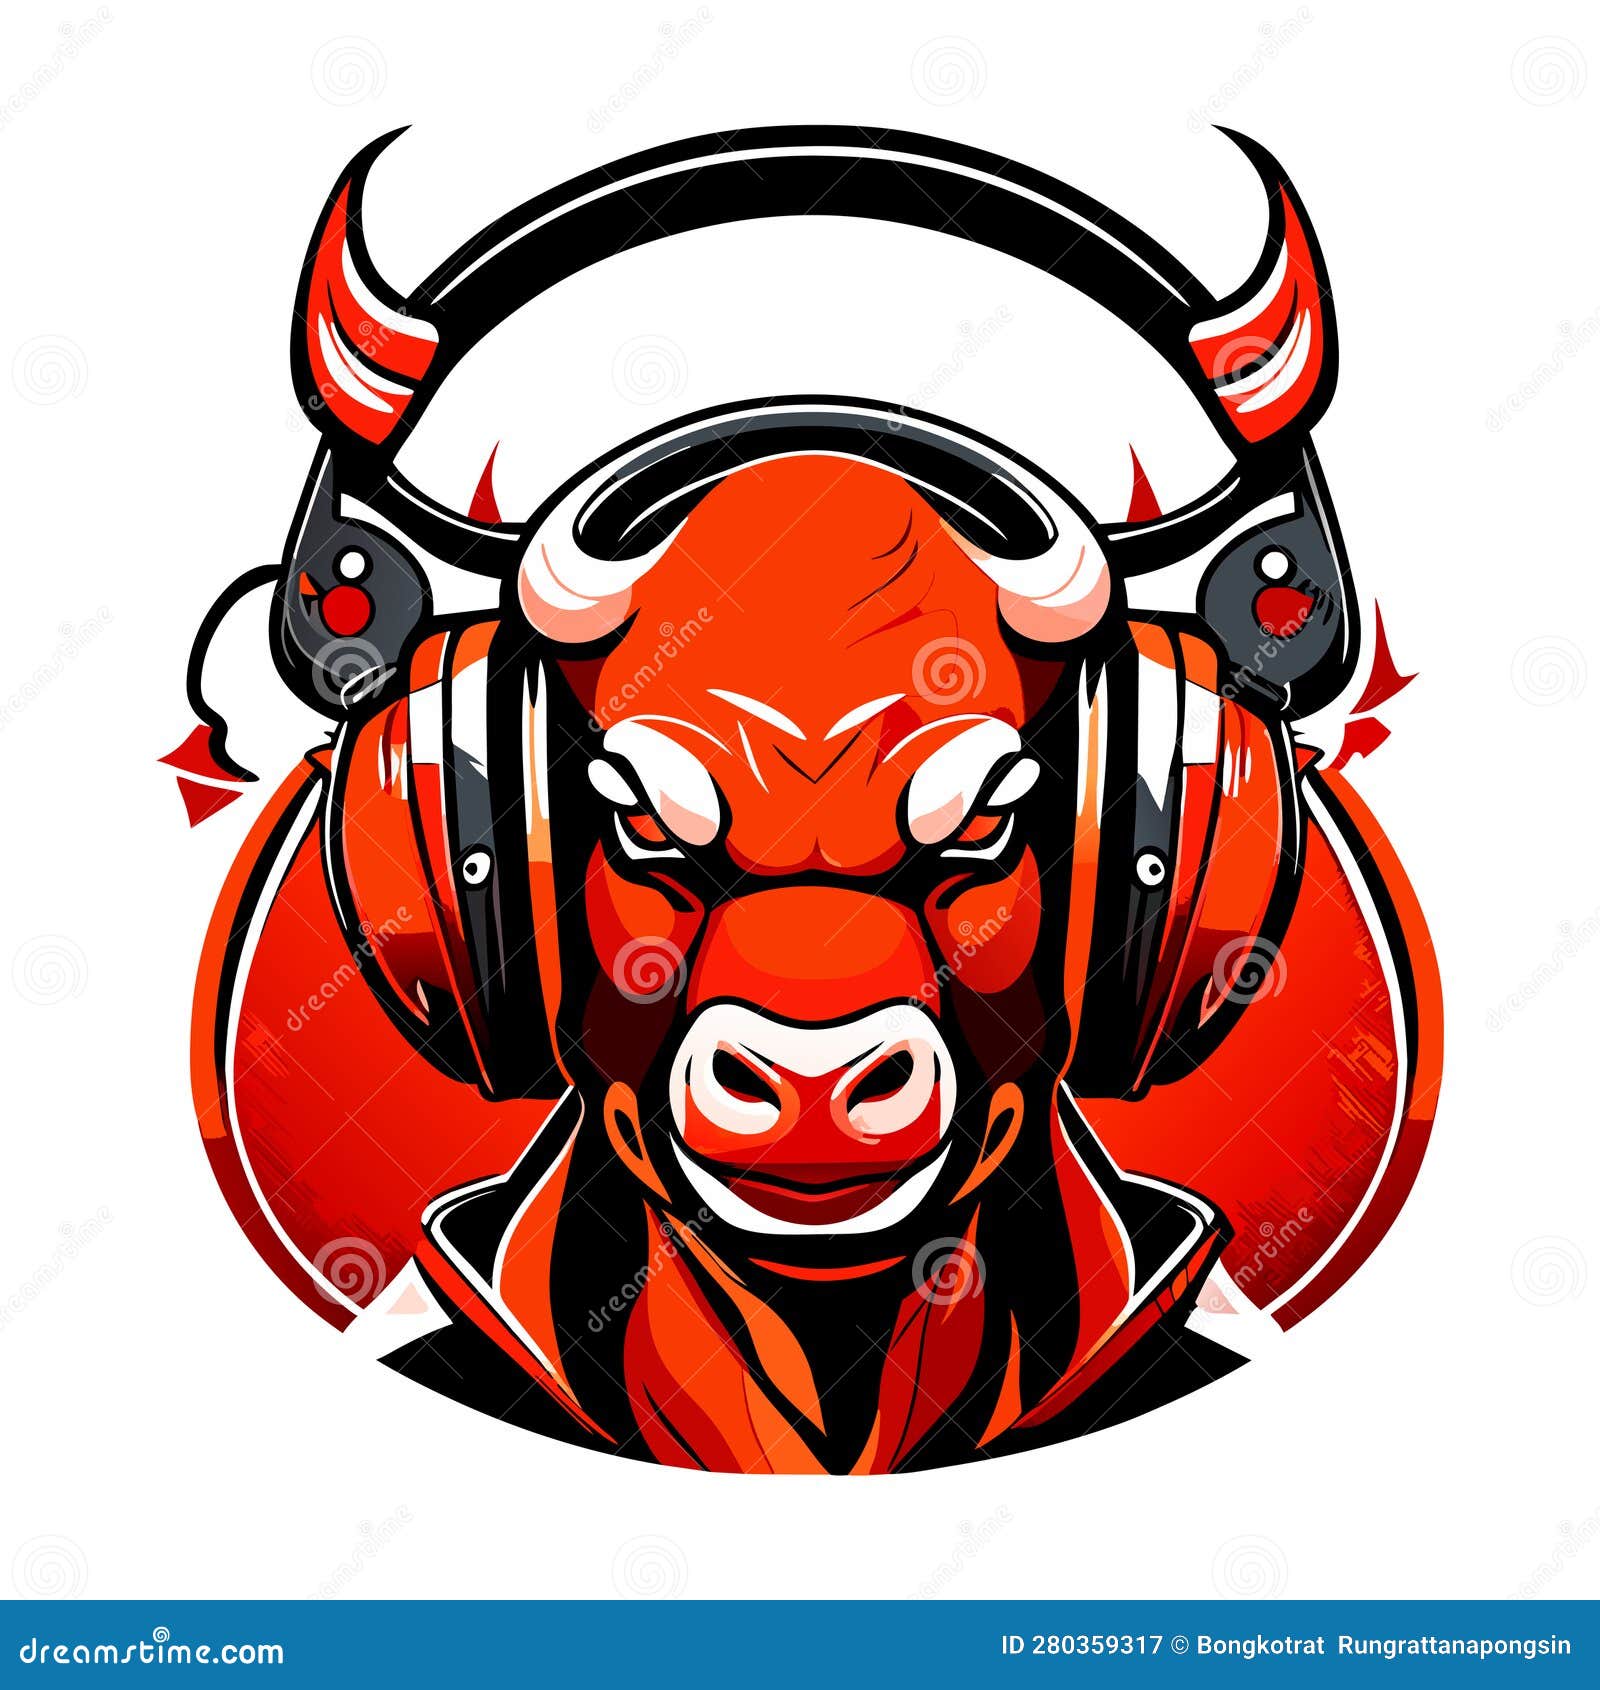 Music  Red Bull